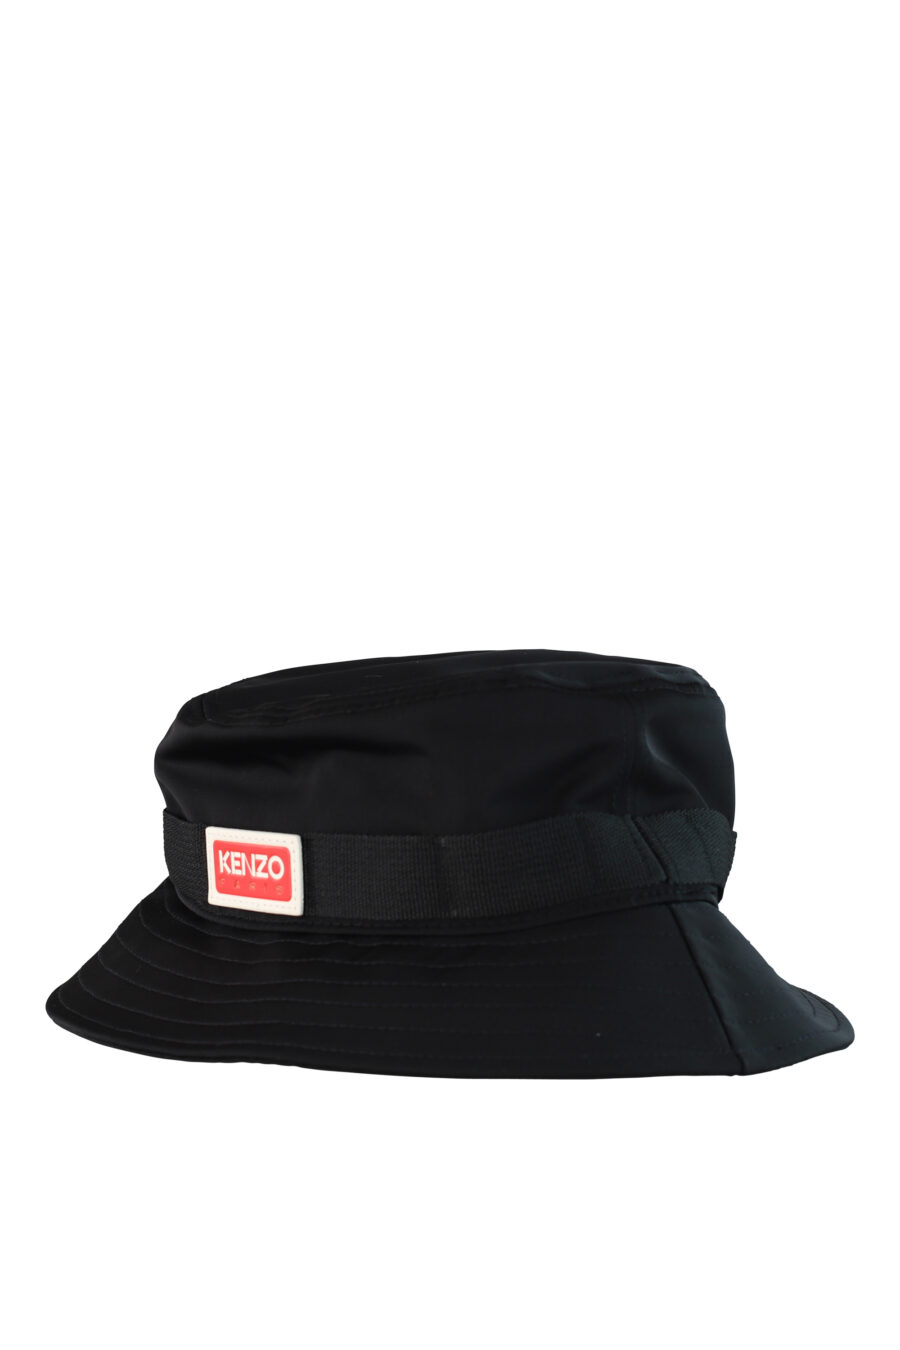 Chapeau de pêcheur noir avec logo "paris" - IMG 0515